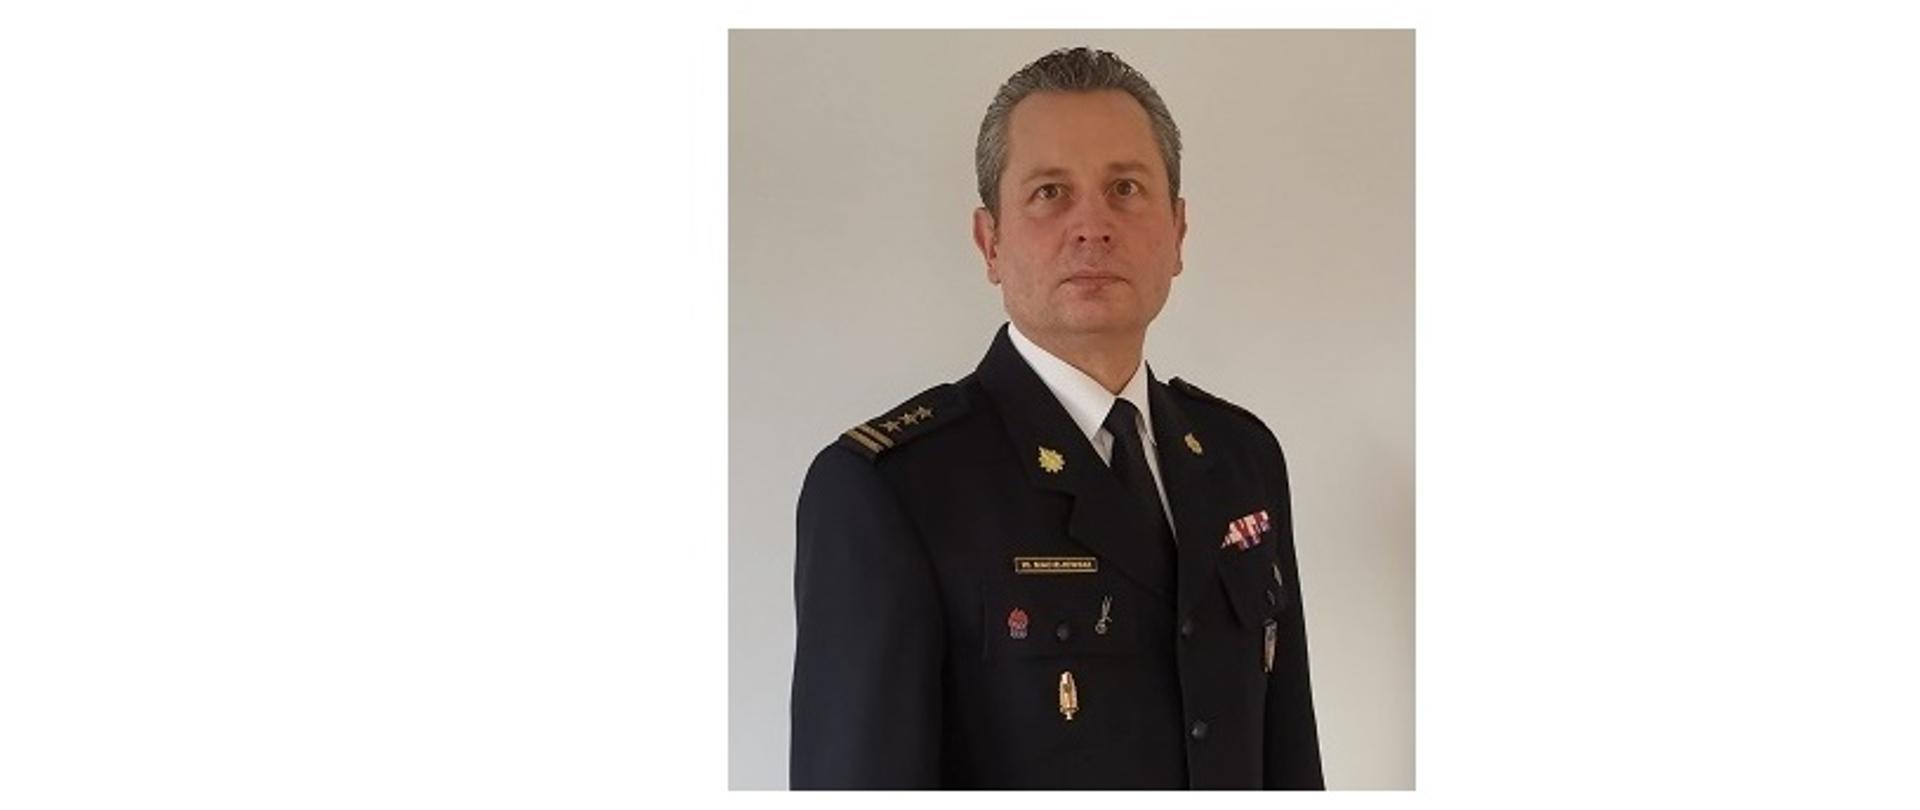 Komendant Powiatowy Państwowej Straży Pożarnej w Wołowie st. bryg. Wojciech Maciejewski na jasnym tle w mundurze galowym. 